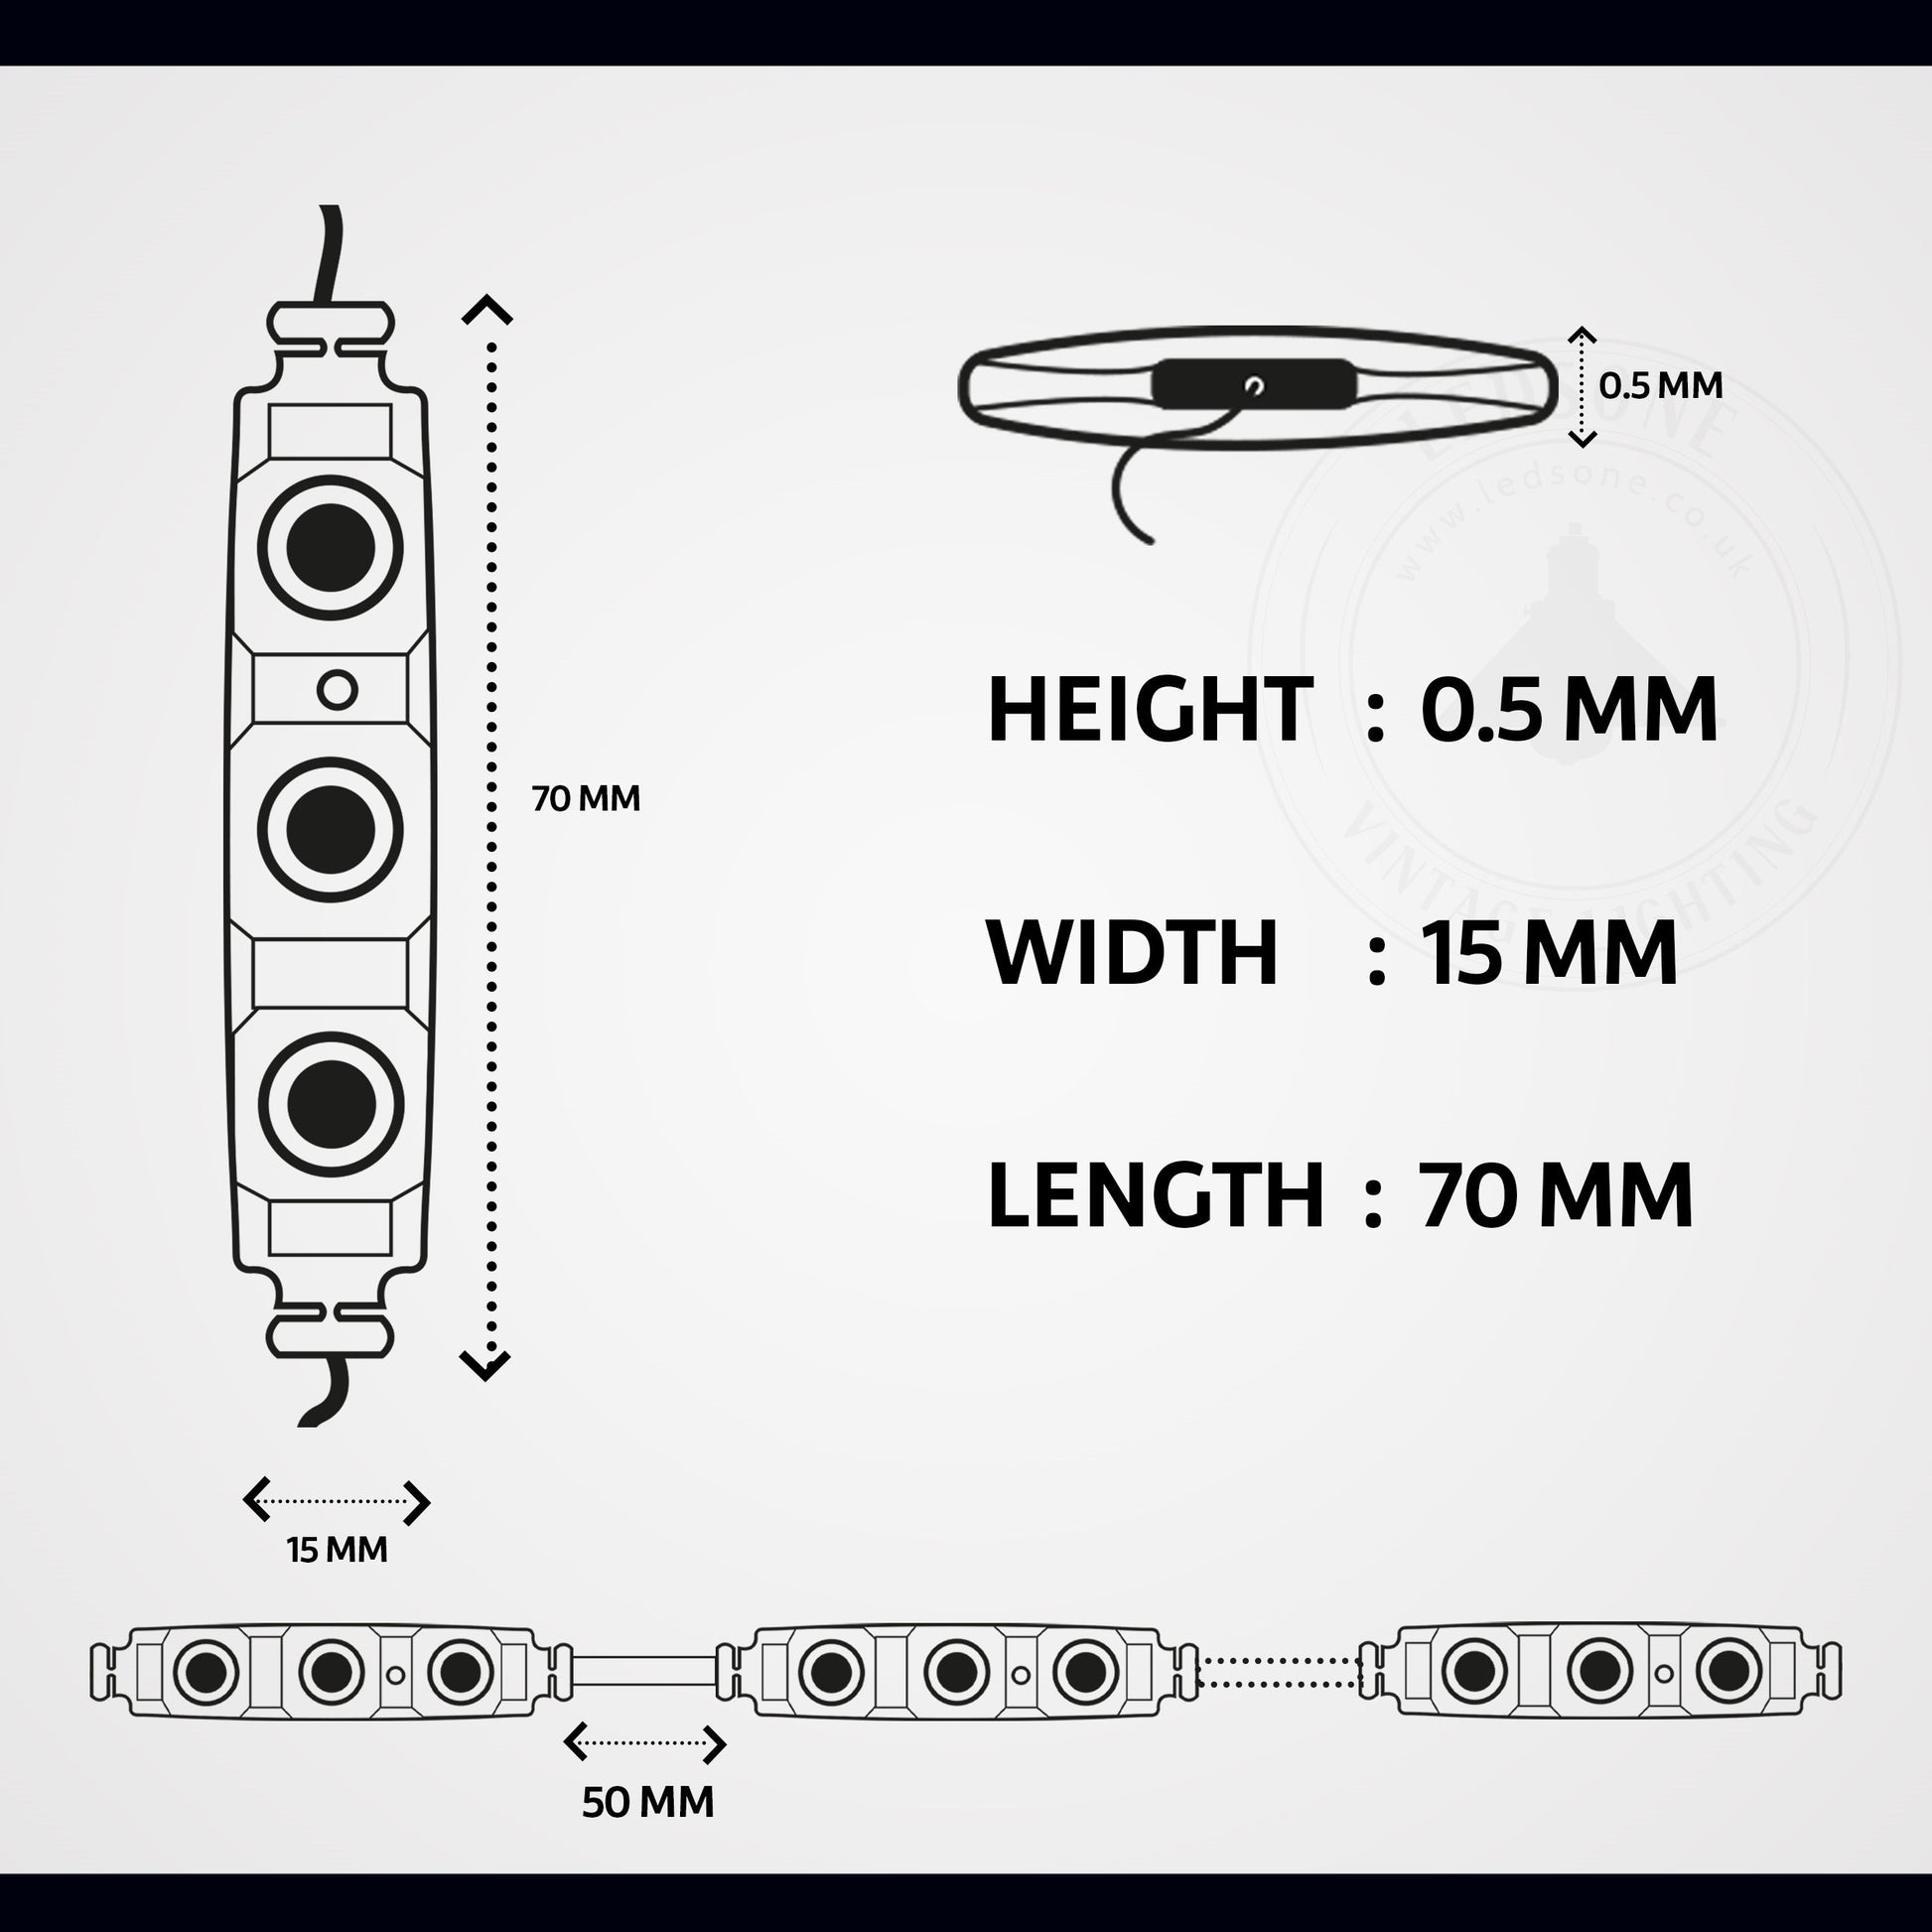 RGB 12V SMD LED Module Lights IP65 Waterproof LED Strips - Detail Image 4